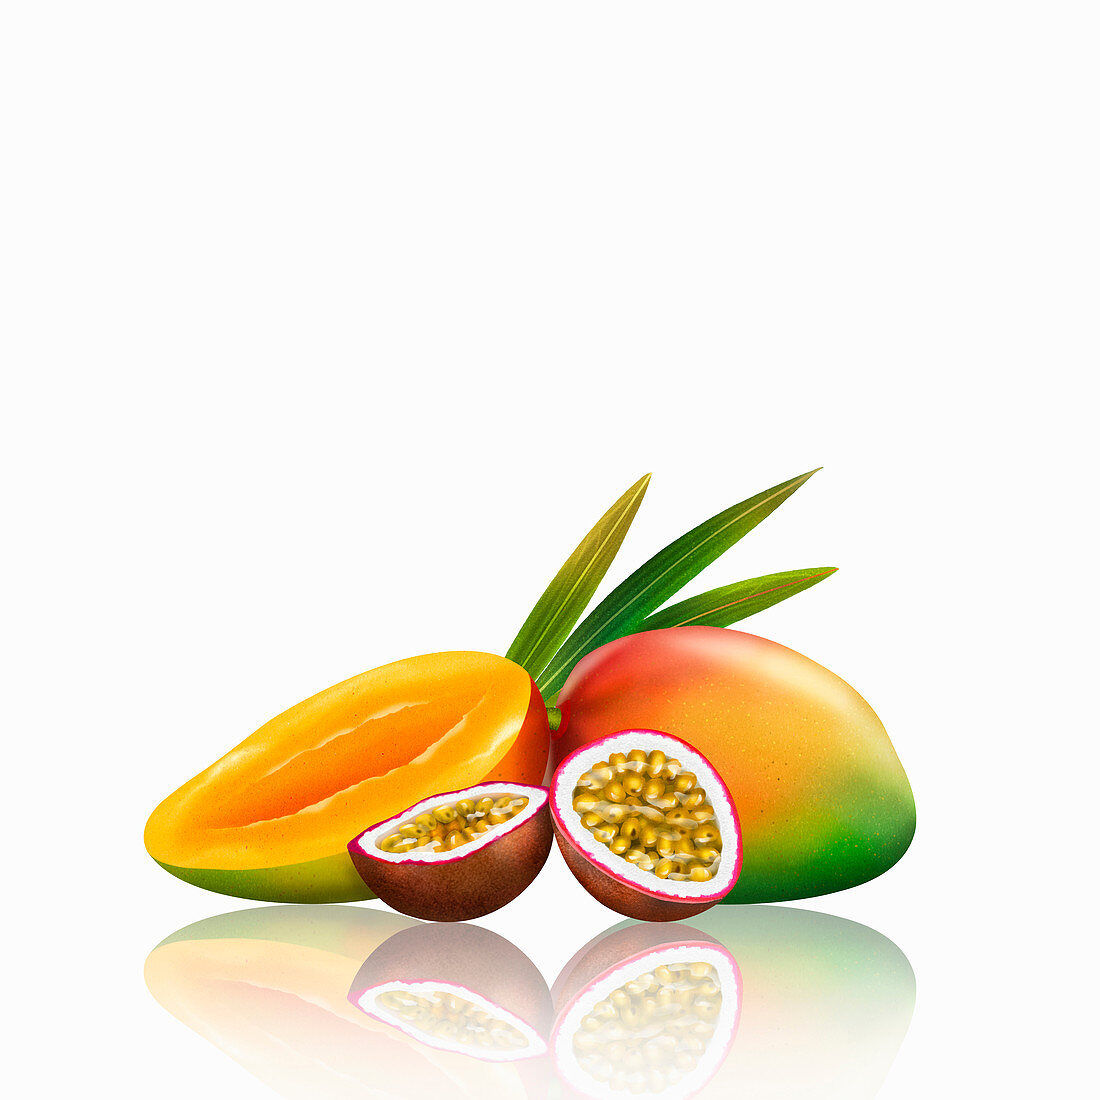 Fresh mangoes and passionfruit, illustration